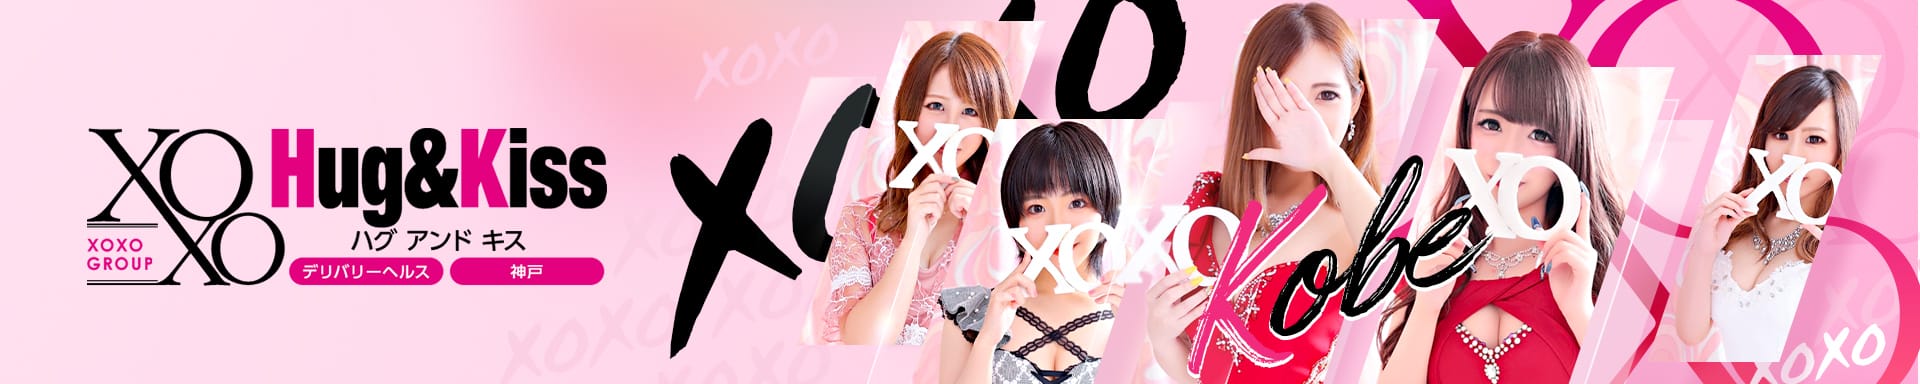 XOXO Hug&Kiss 神戸店 - 神戸・三宮